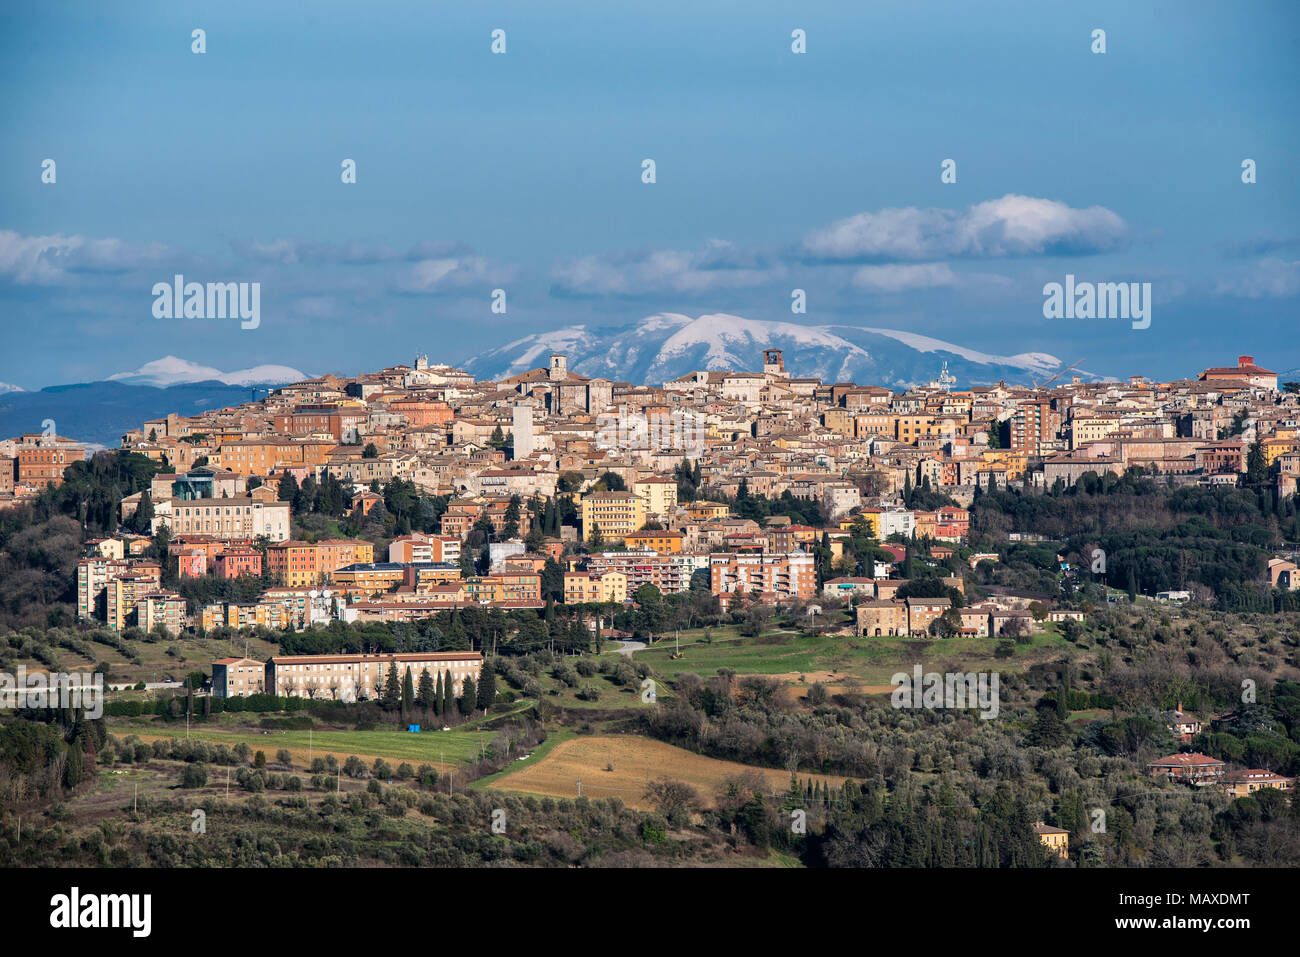 Perugia, Umbrien, Italien. Panorama der Skyline von Perugia. Die Stadt erhebt sich auf einem Hügel und hat eine alte Geschichte seit der Zeit der Etrusker. Stockfoto